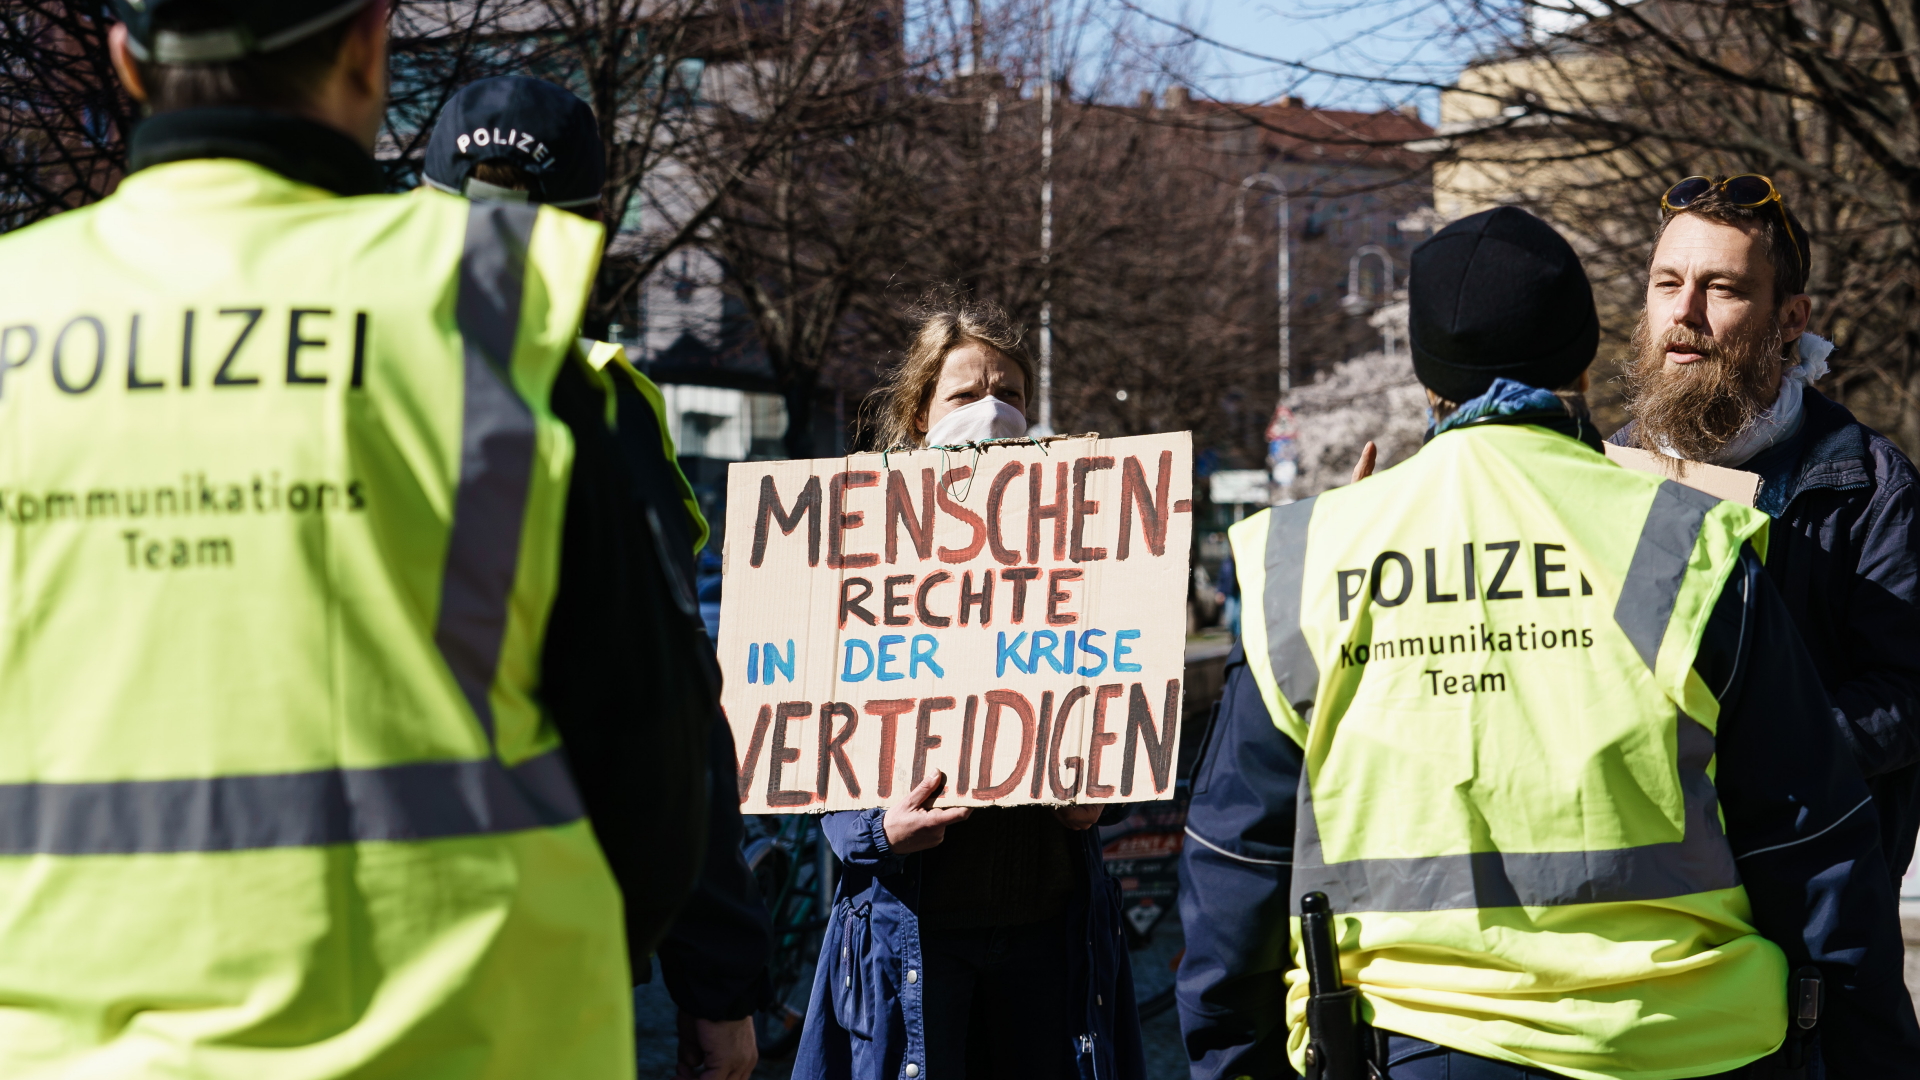 Teilnehmer einer Demo vor der Volksbühne in Berlin, umgeben von Polizisten | CLEMENS BILAN/EPA-EFE/Shuttersto